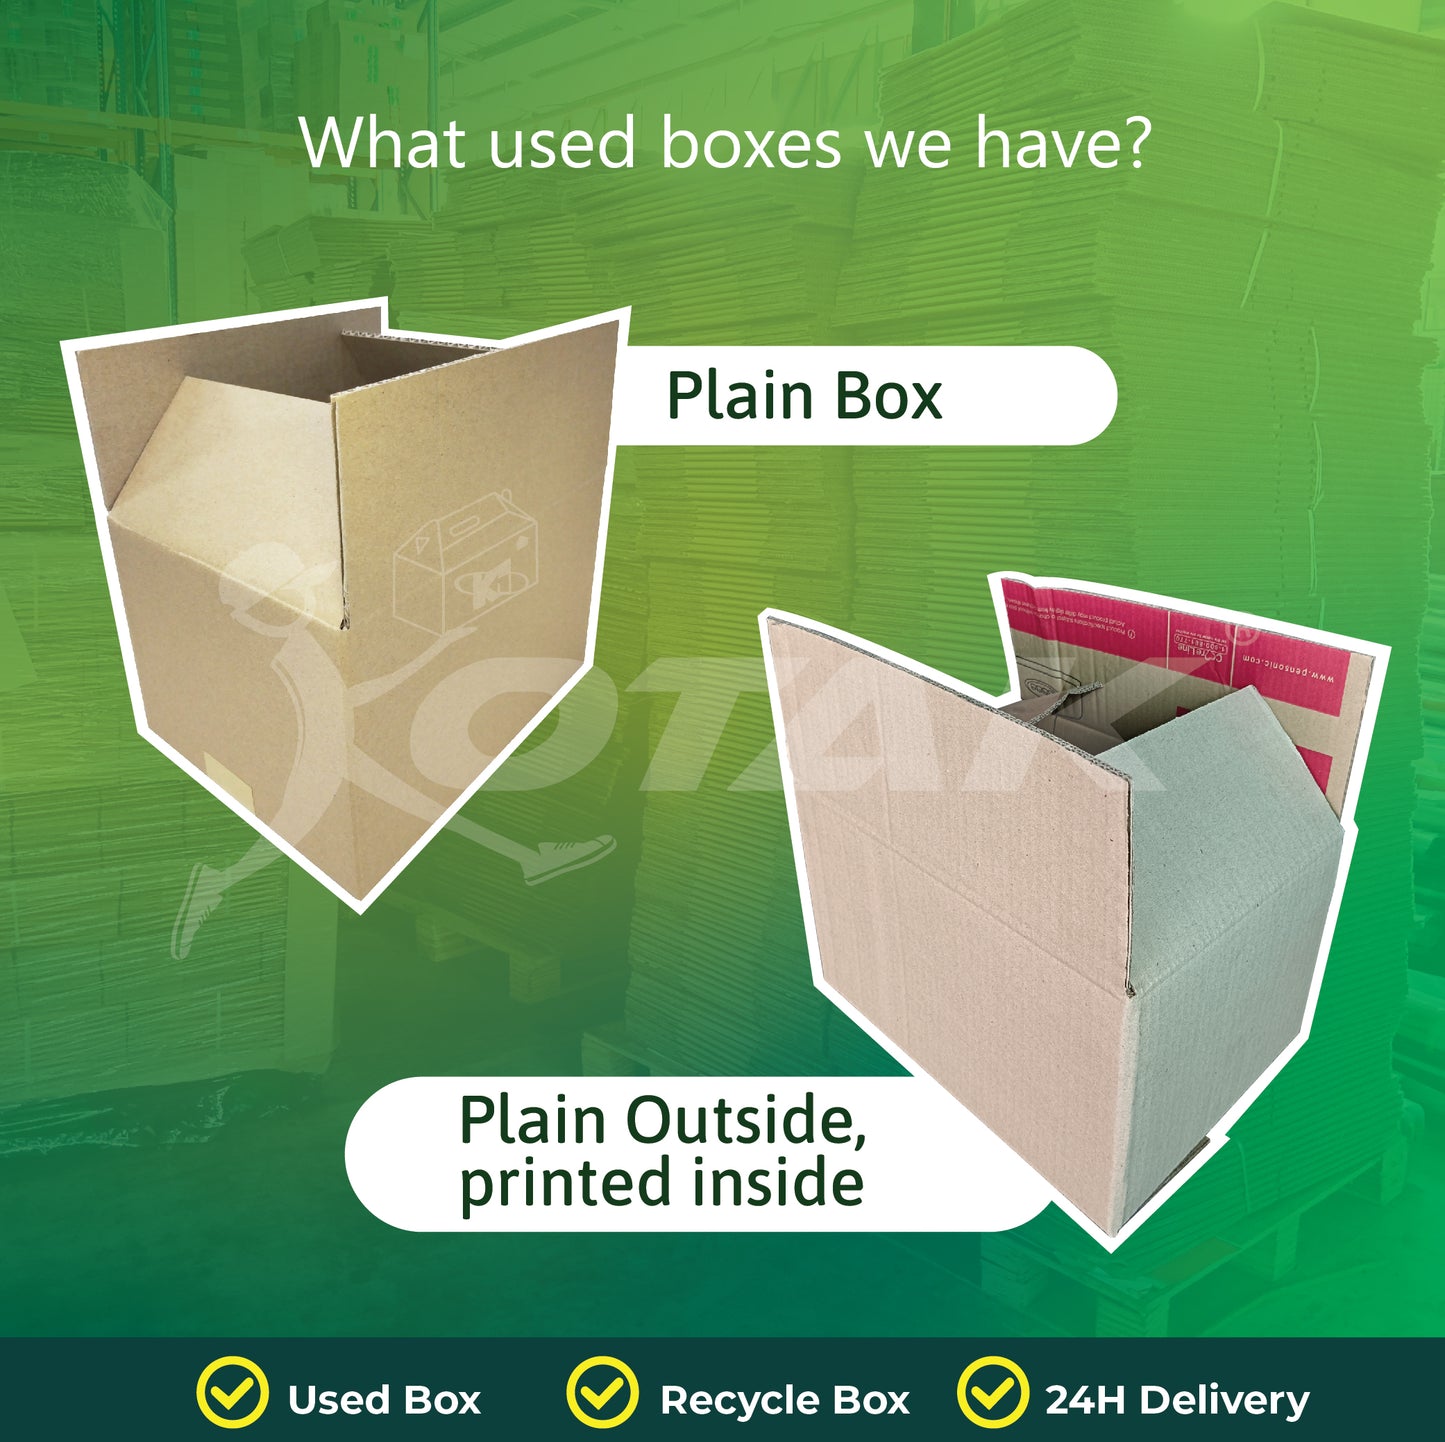 Kotak Used Box / Recycle Box